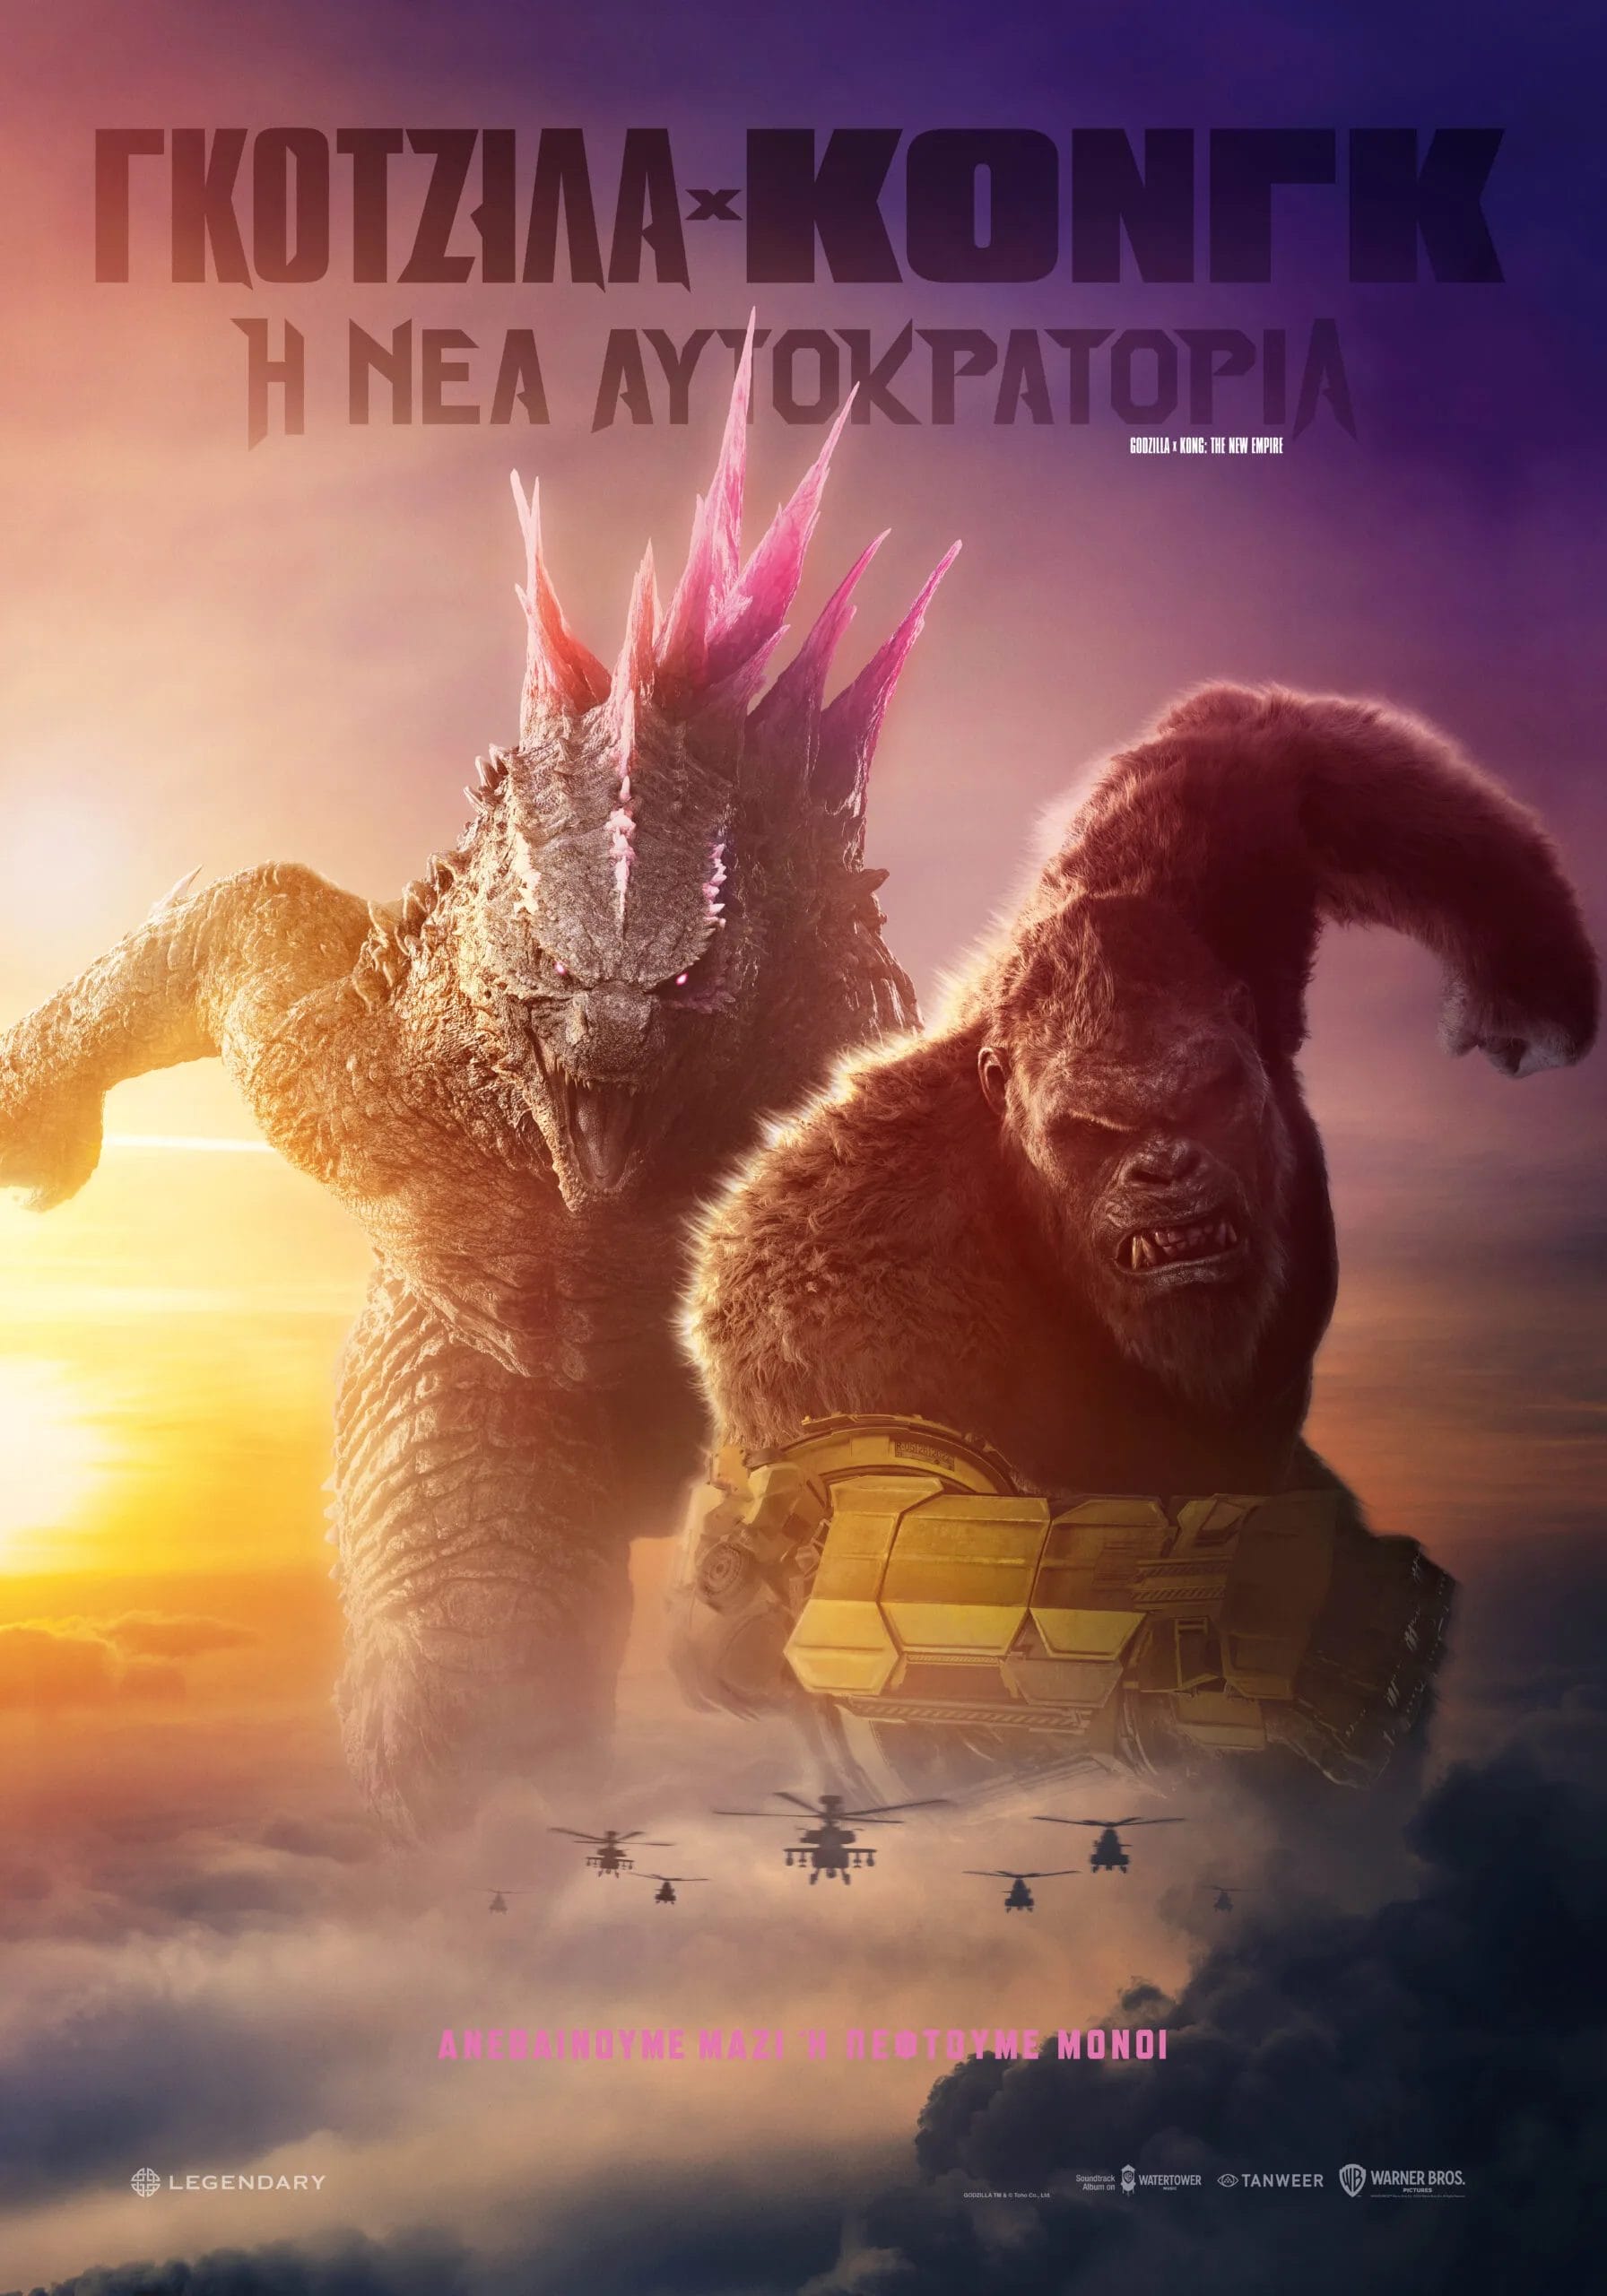 Godzilla-x-Kong-poster-300dpi-scaled